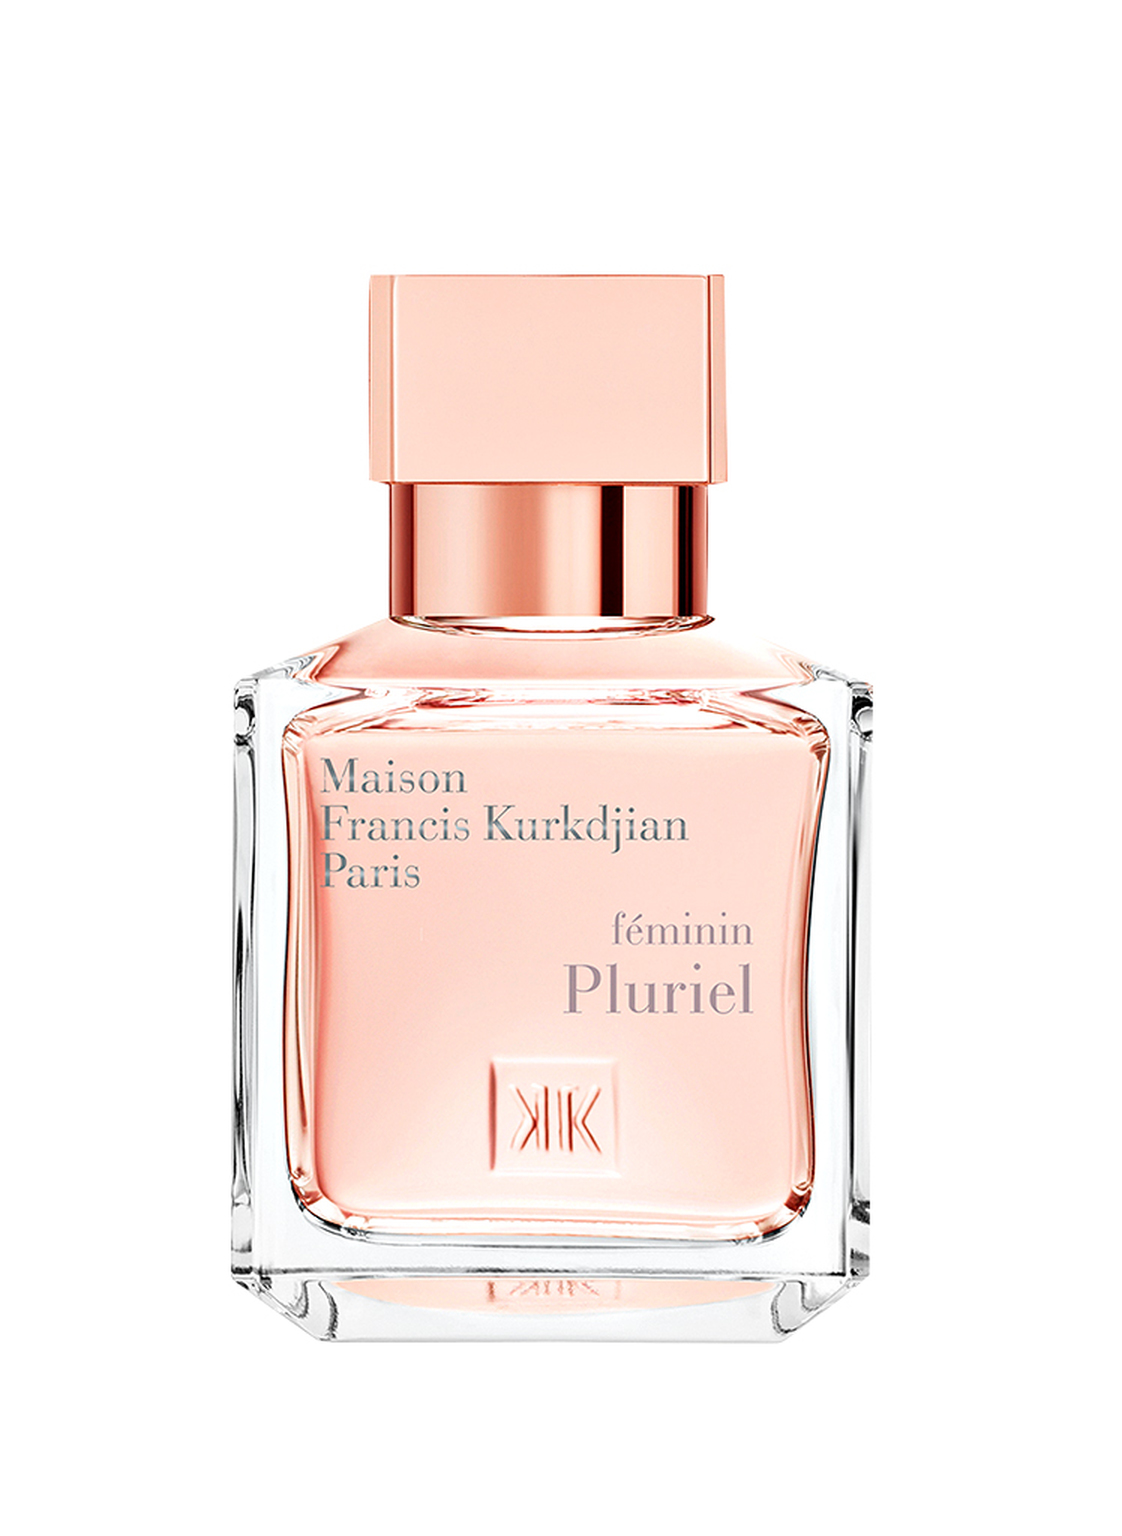 Maison Francis Kurkdjian Paris Féminin Pluriel Eau de Parfum 70 ml